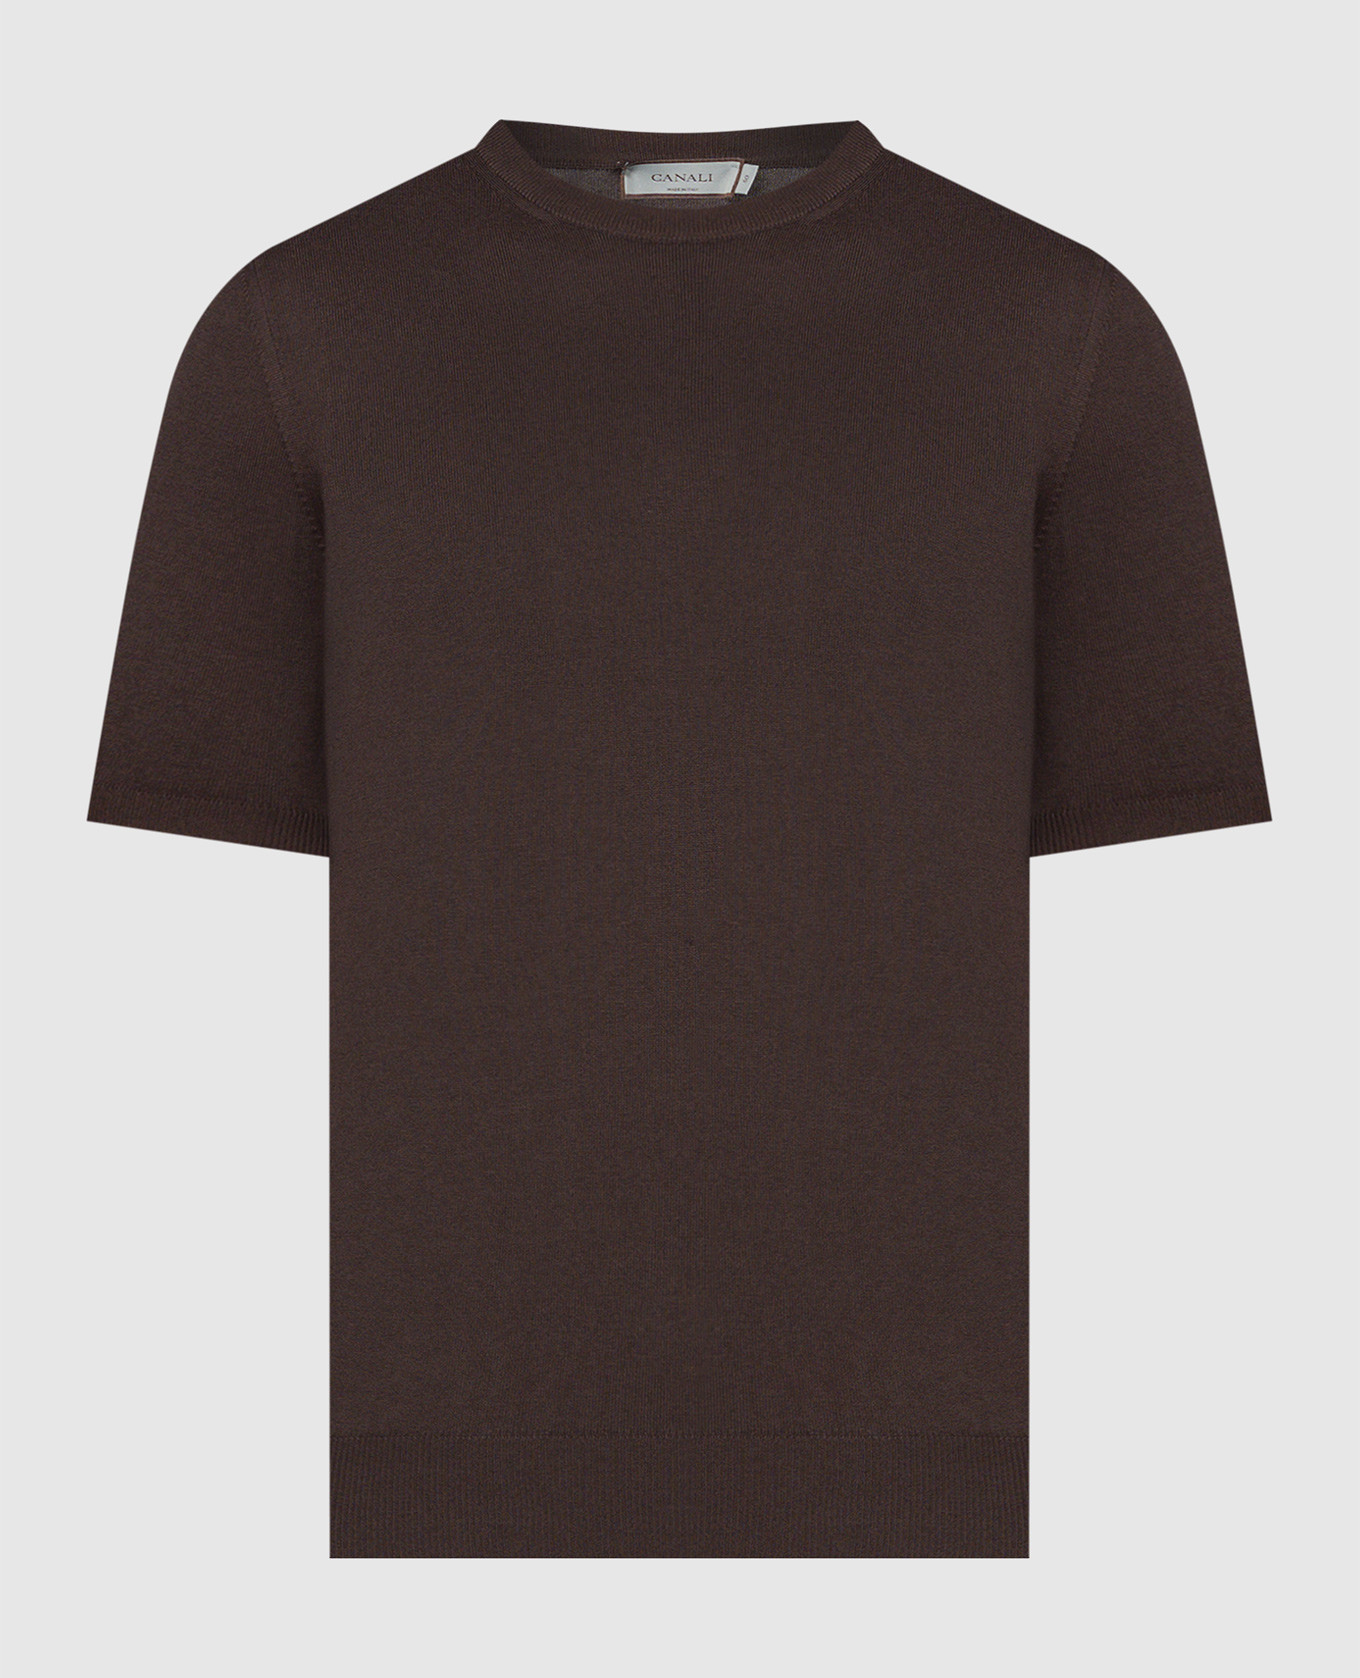 Camiseta marrón